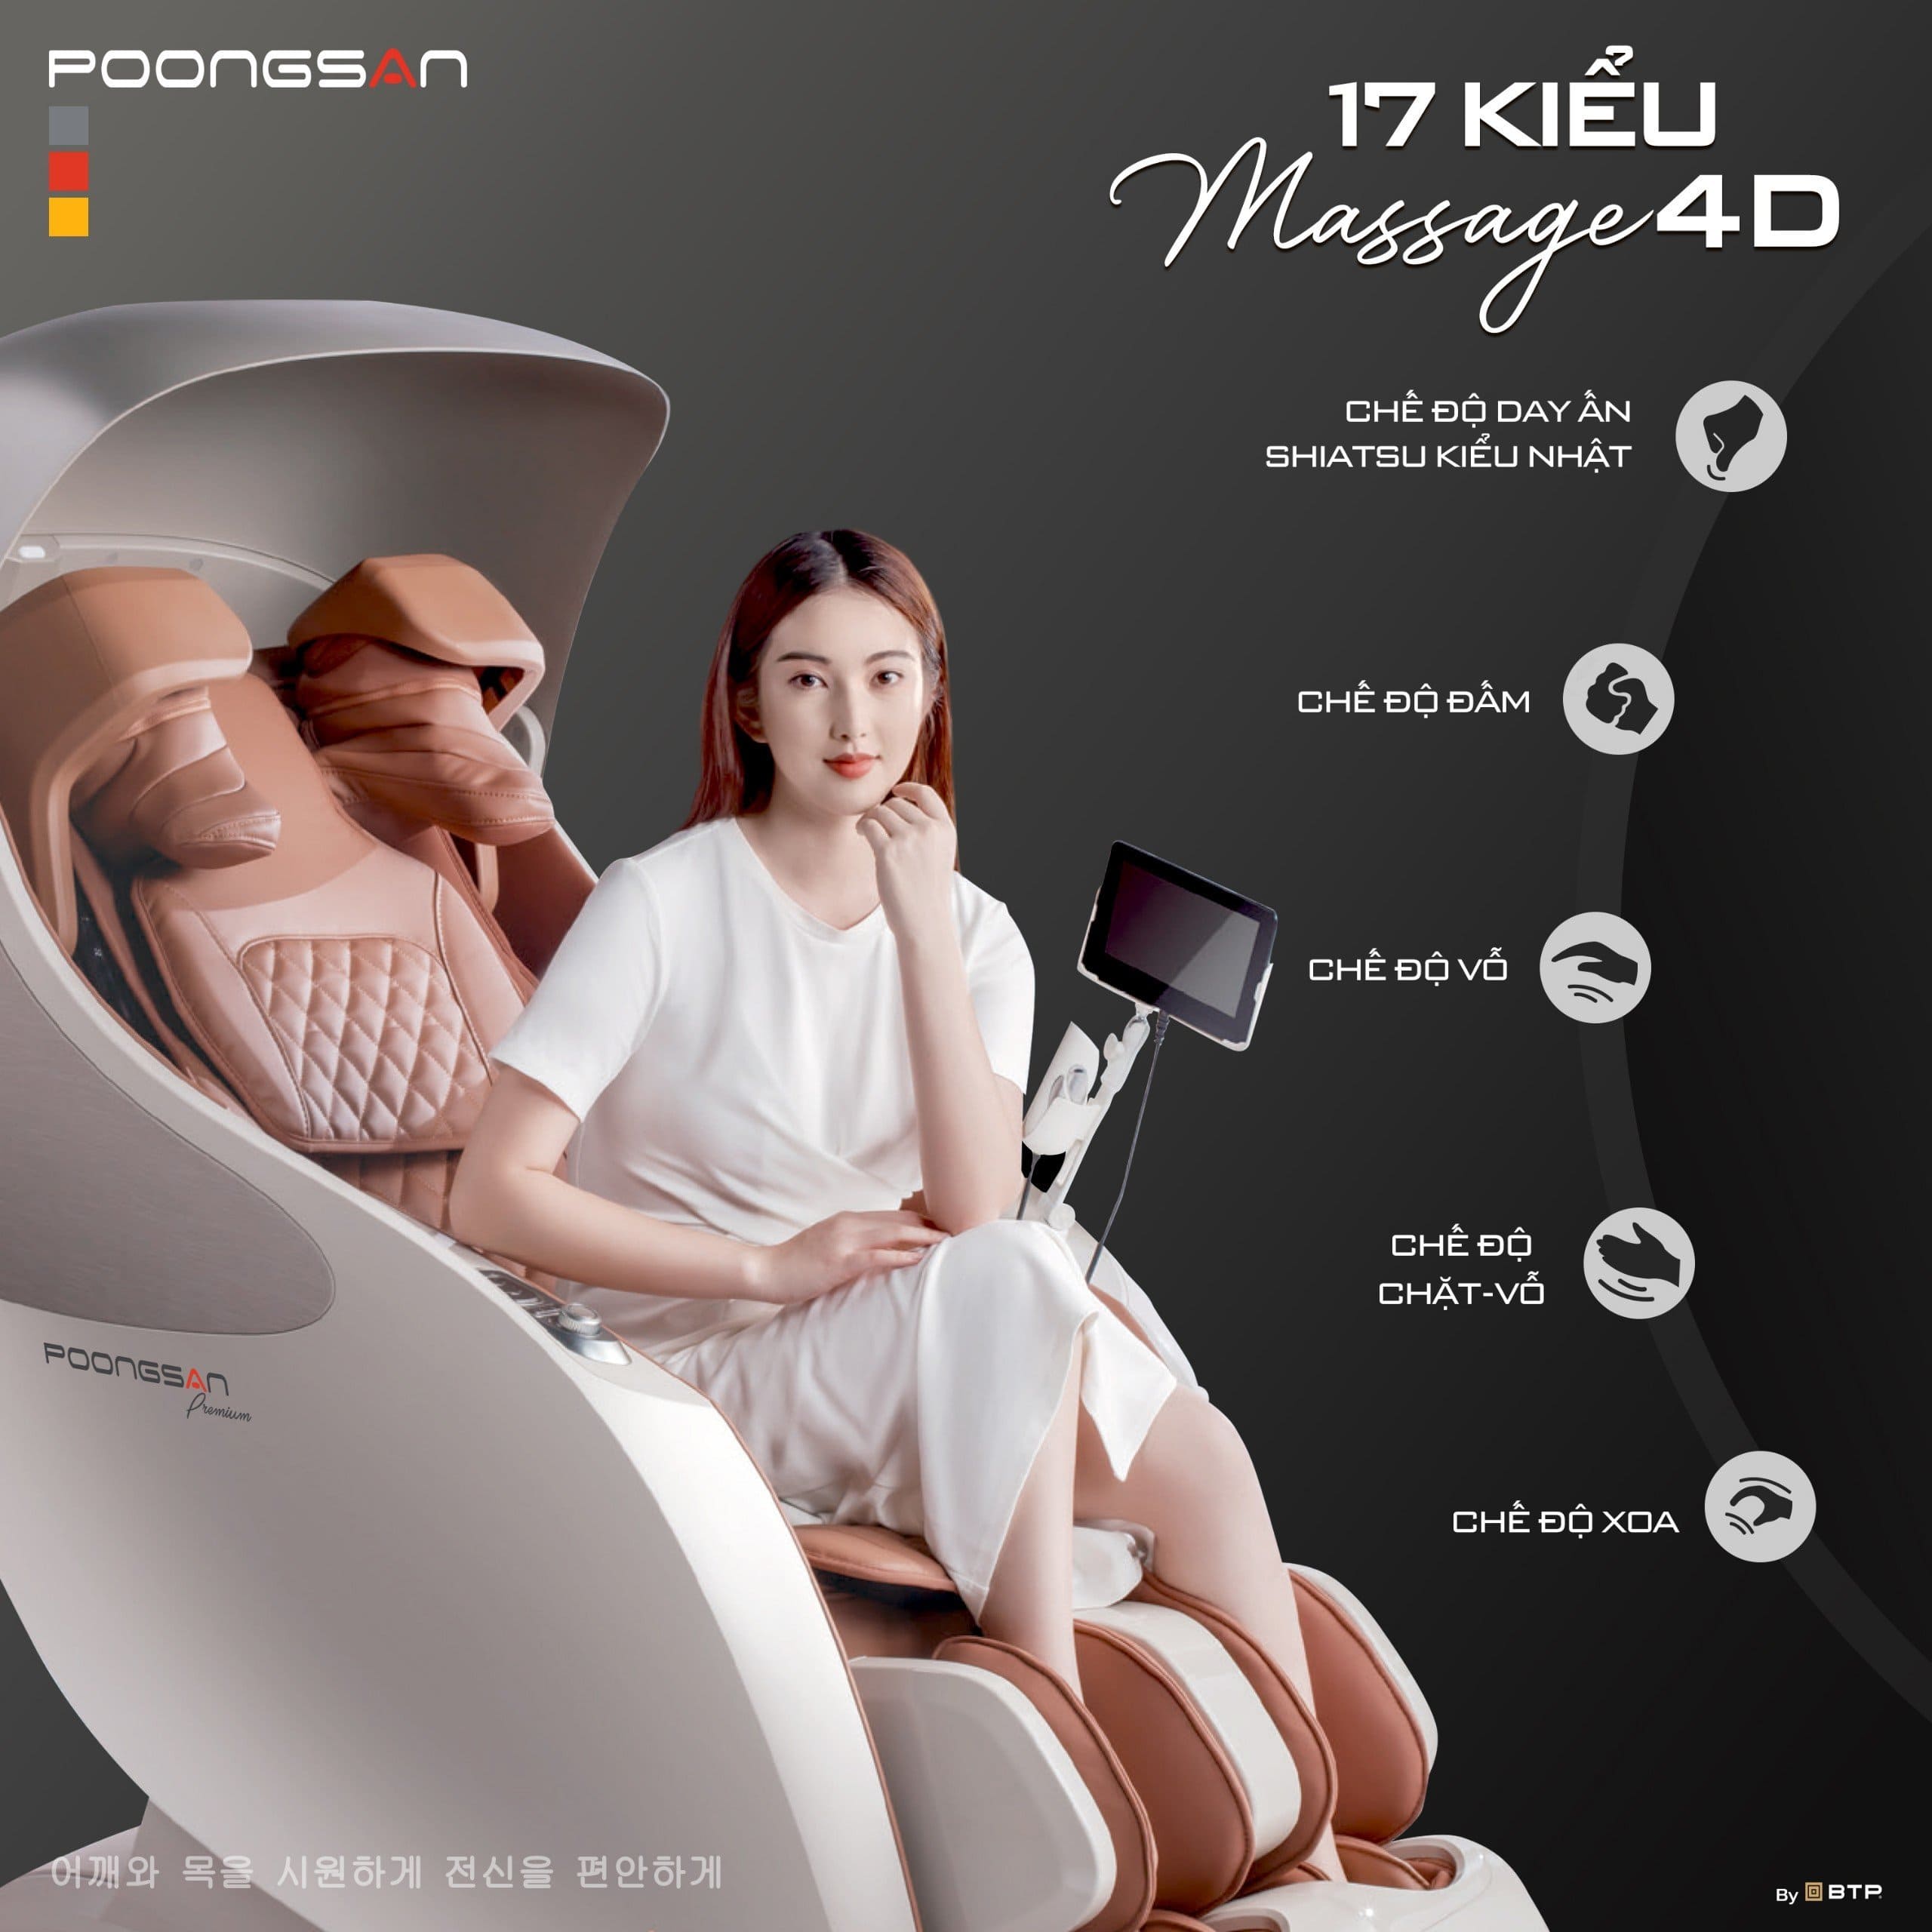 Ghế massage MCP-906 có 5 chế độ Massage 4D